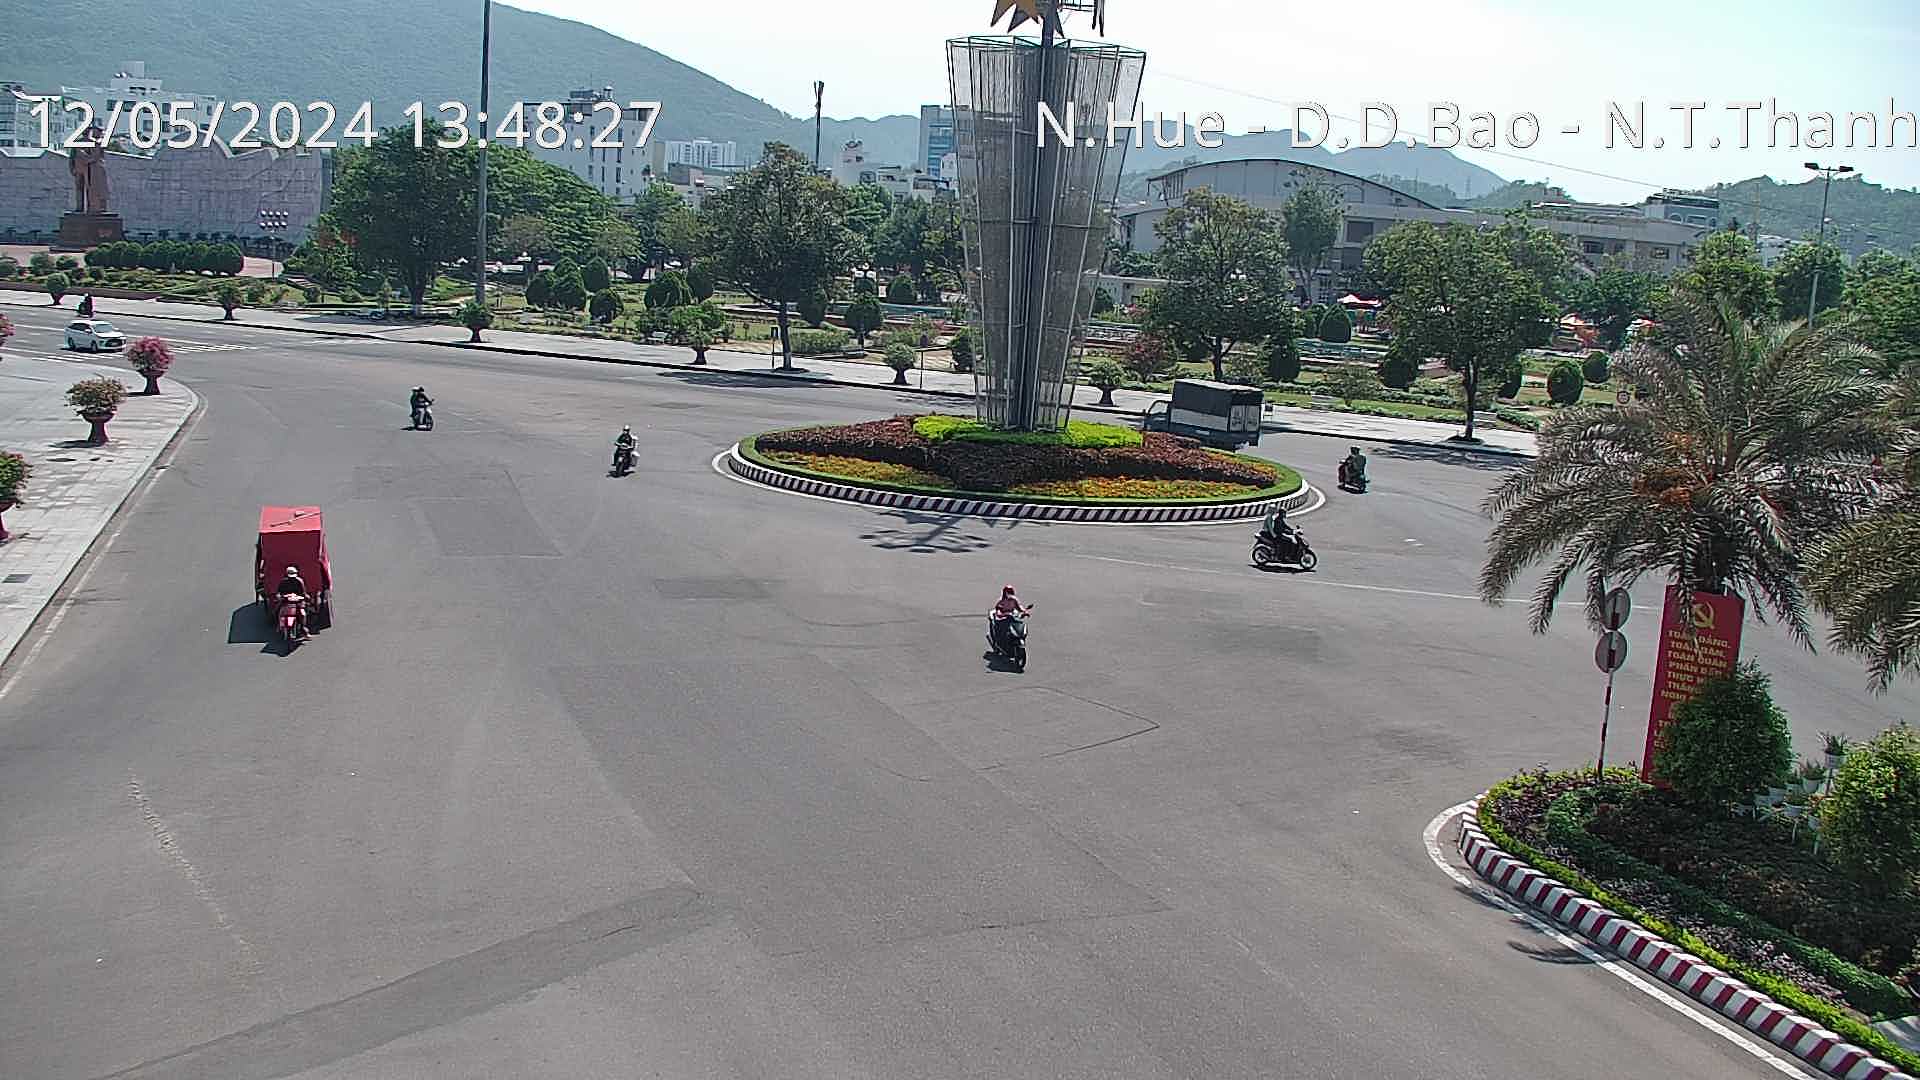 Xem camera giao thông Quy Nhơn Bình Định hình ảnh tuyến đường Ngã 5 Nguyễn Huệ – Đô Đốc Bảo – Nguyễn Tất Thành